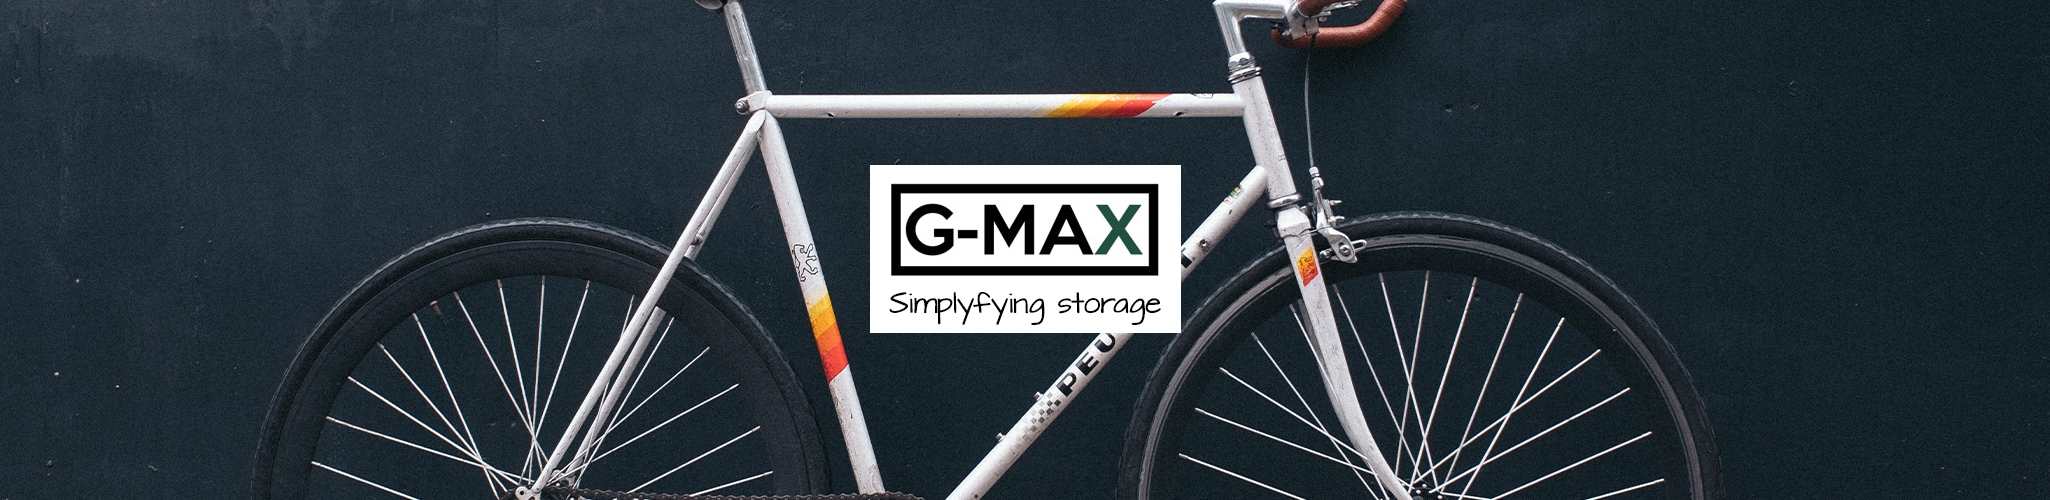 G-MAX | utvalg | Kjøp på nett - Hekta På Tur